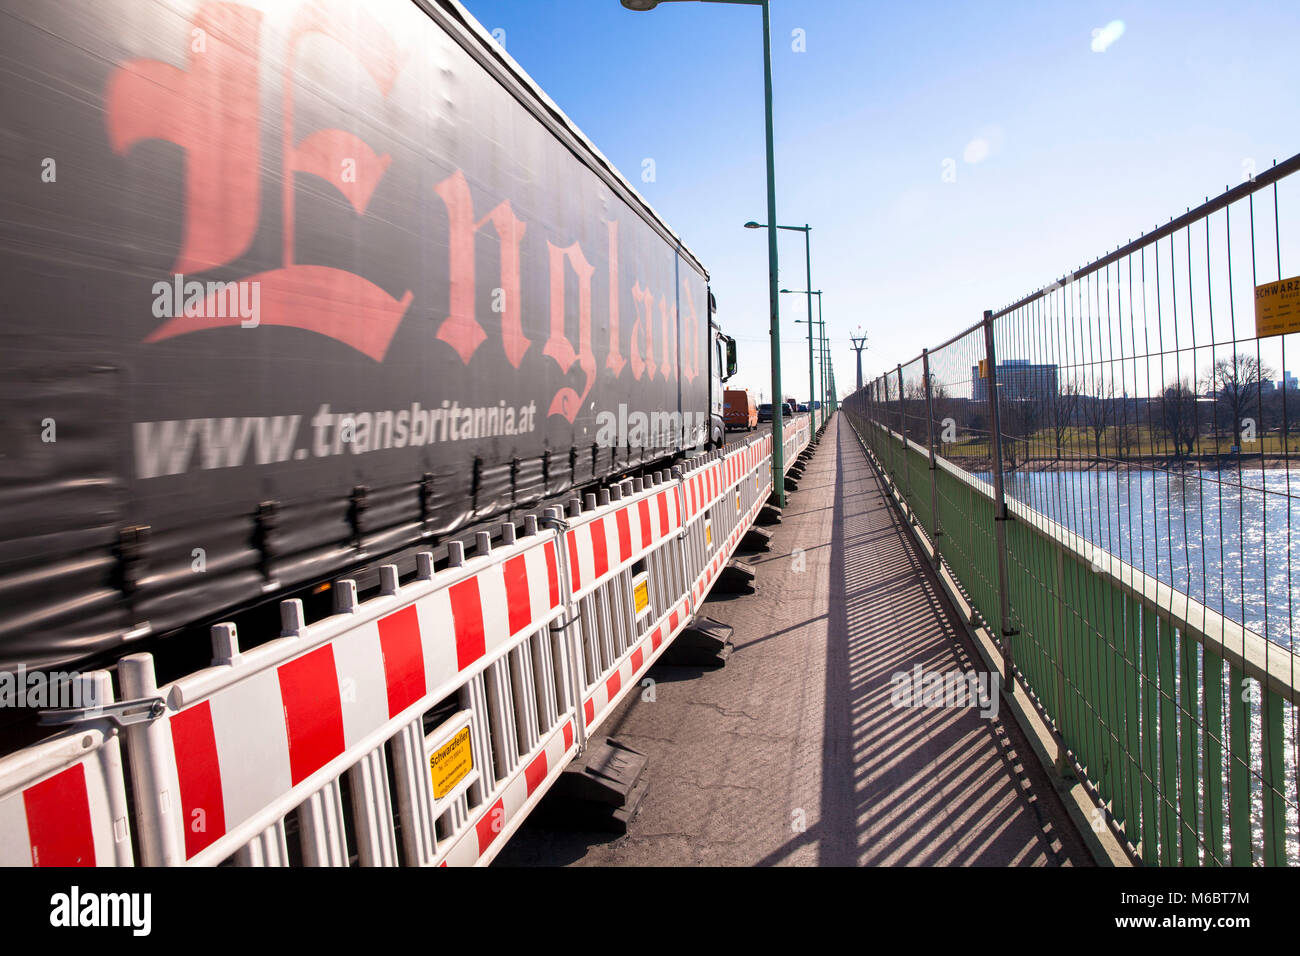 Les barrières routières à une zone de construction routière sur le Zoo pont sur le Rhin, Cologne, Allemagne. Baustellenabsperrung Zoobruecke in ueber d Banque D'Images